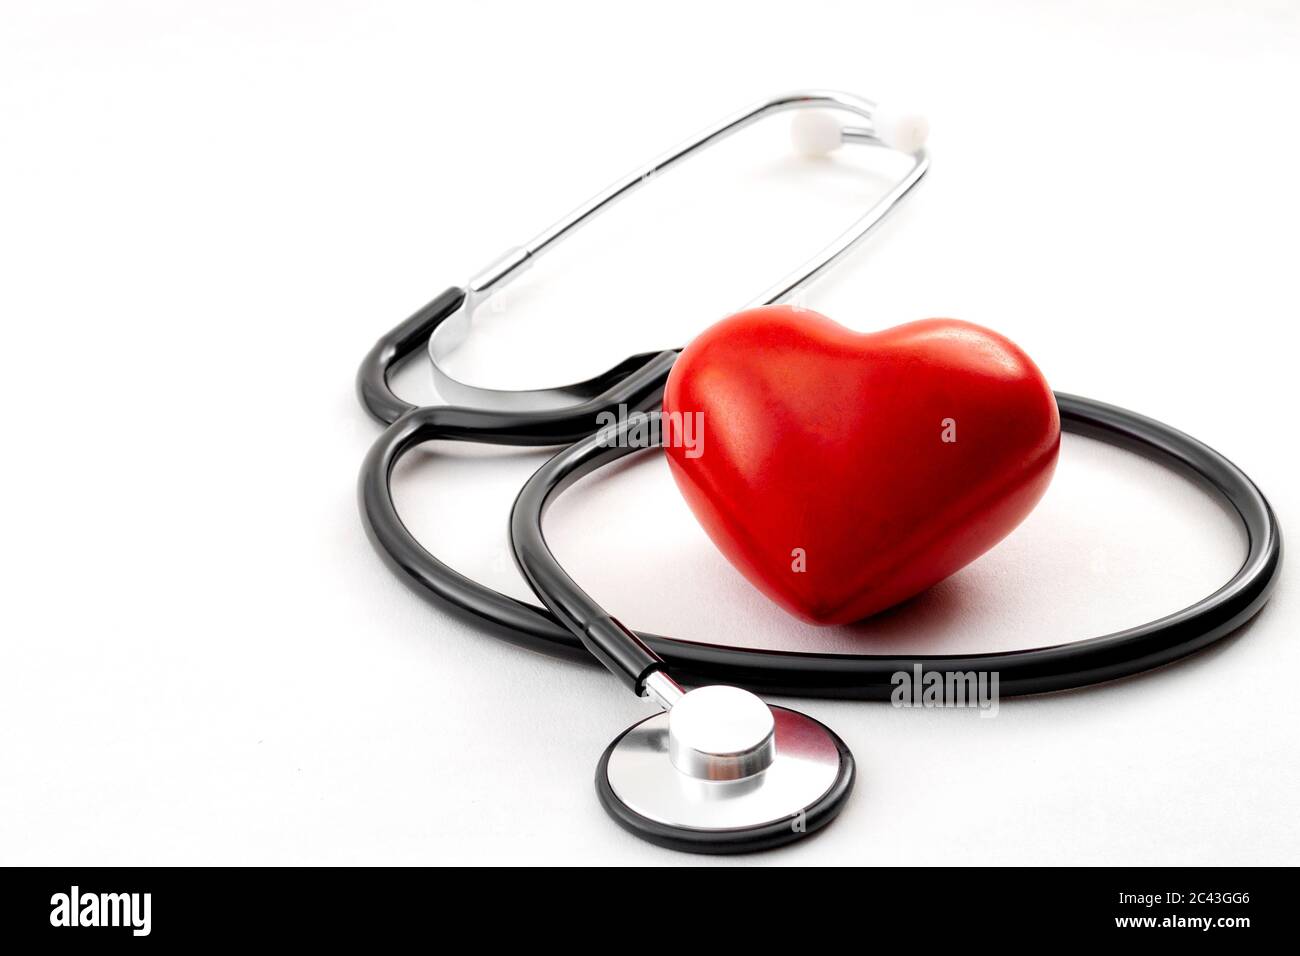 Controllo annuale della salute, diagnosi di malattie, medicina sanitaria e cardiologia concetto con un cuore rosso e uno stetoscopio isolato su un ospedale bianco Foto Stock